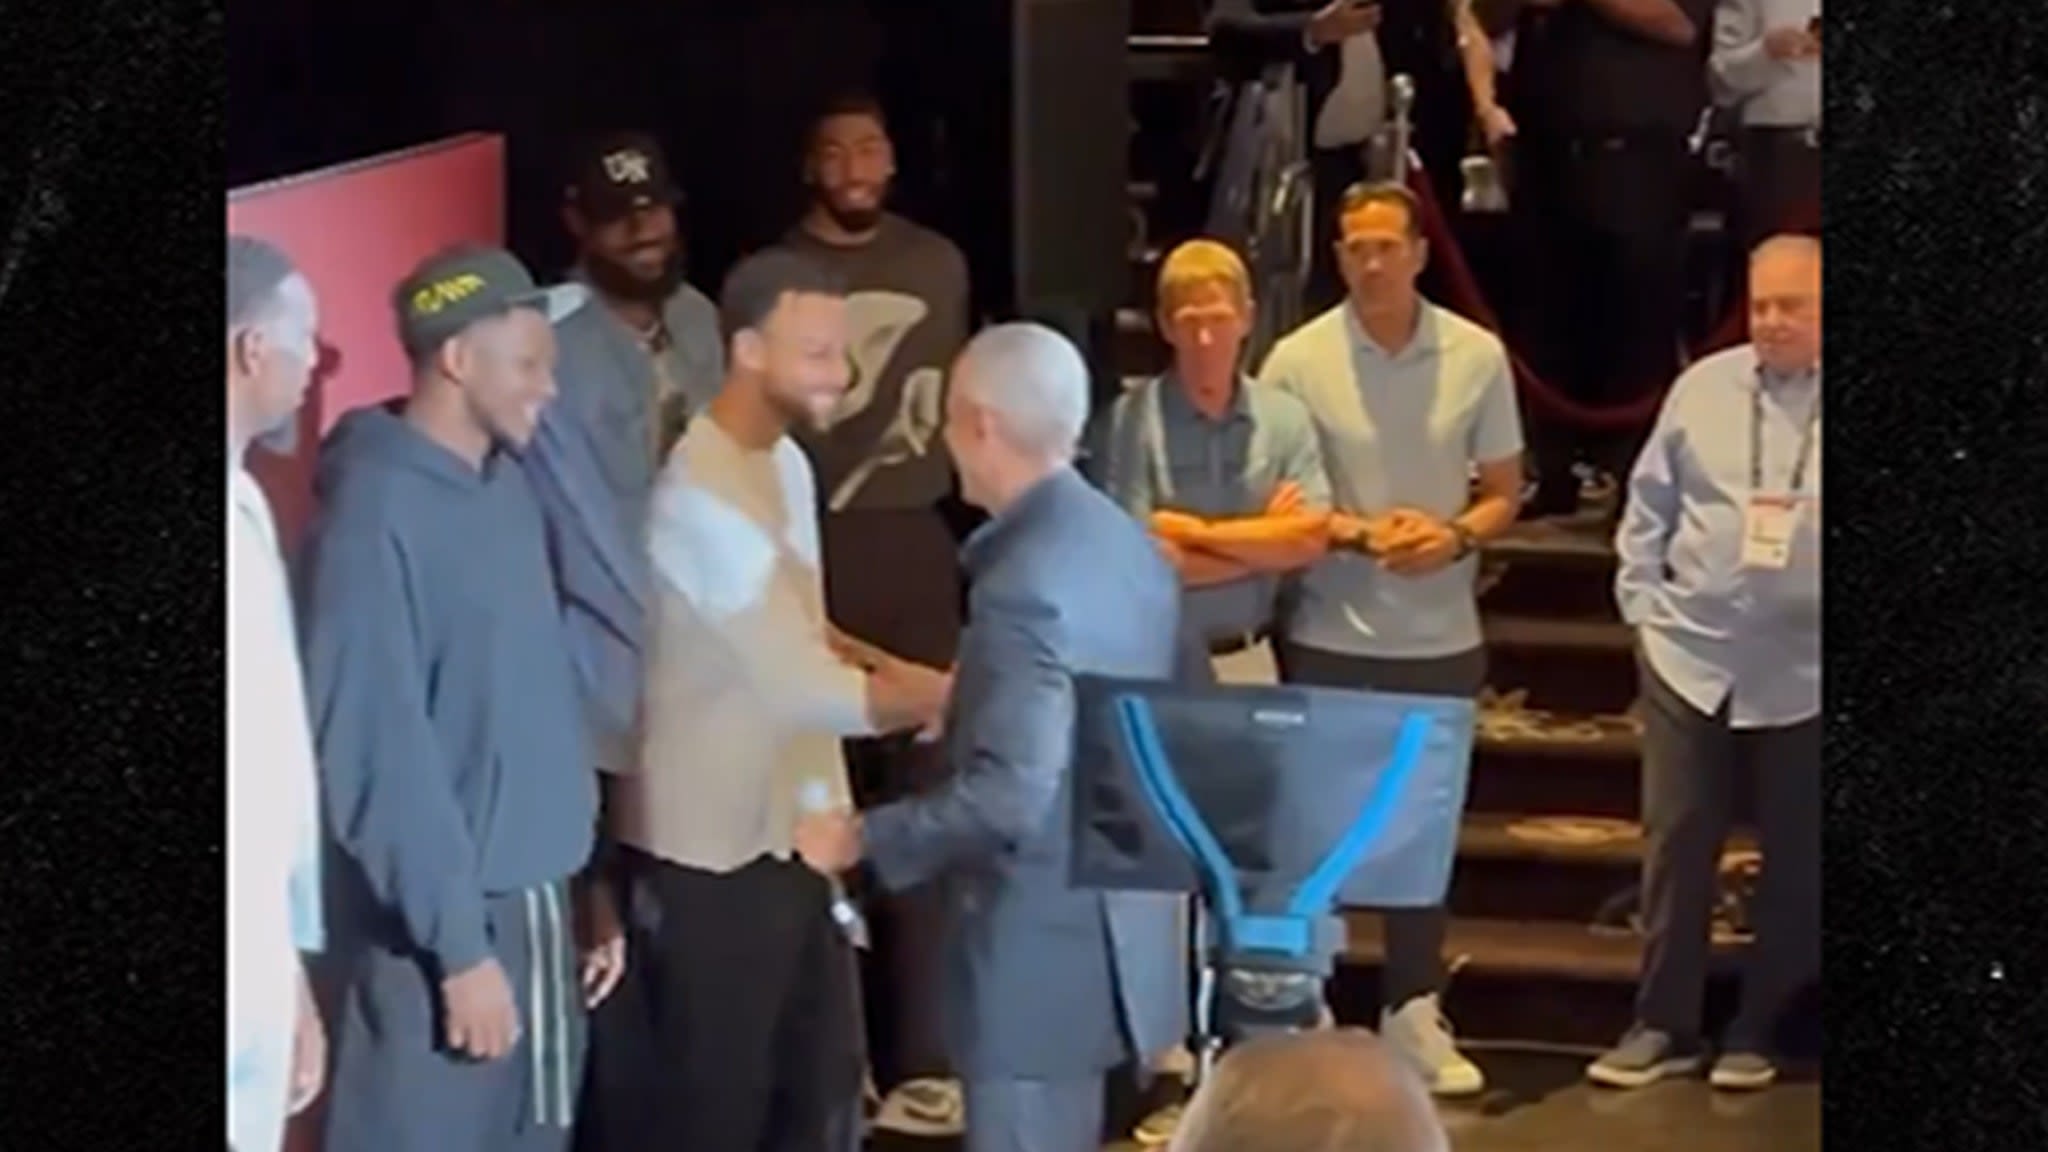 Barack Obama Daps Up Team USA With Hilarious 'Key & Peele' Style Handshakes